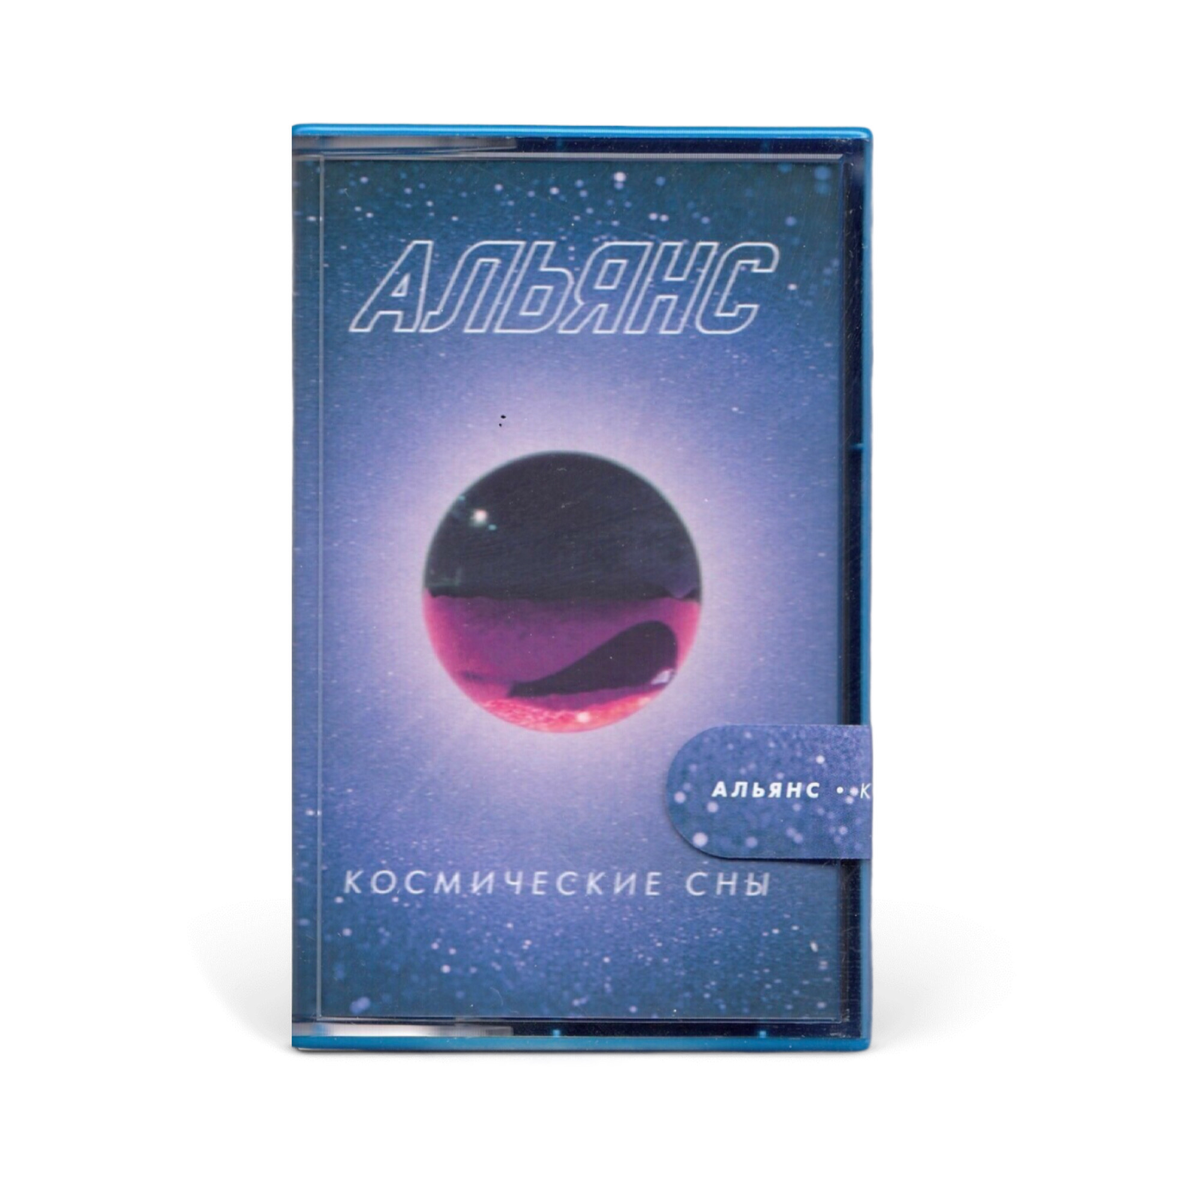 Компакт кассета MC: Альянс — «Космические сны» (2020) [Limited Tape Edition]